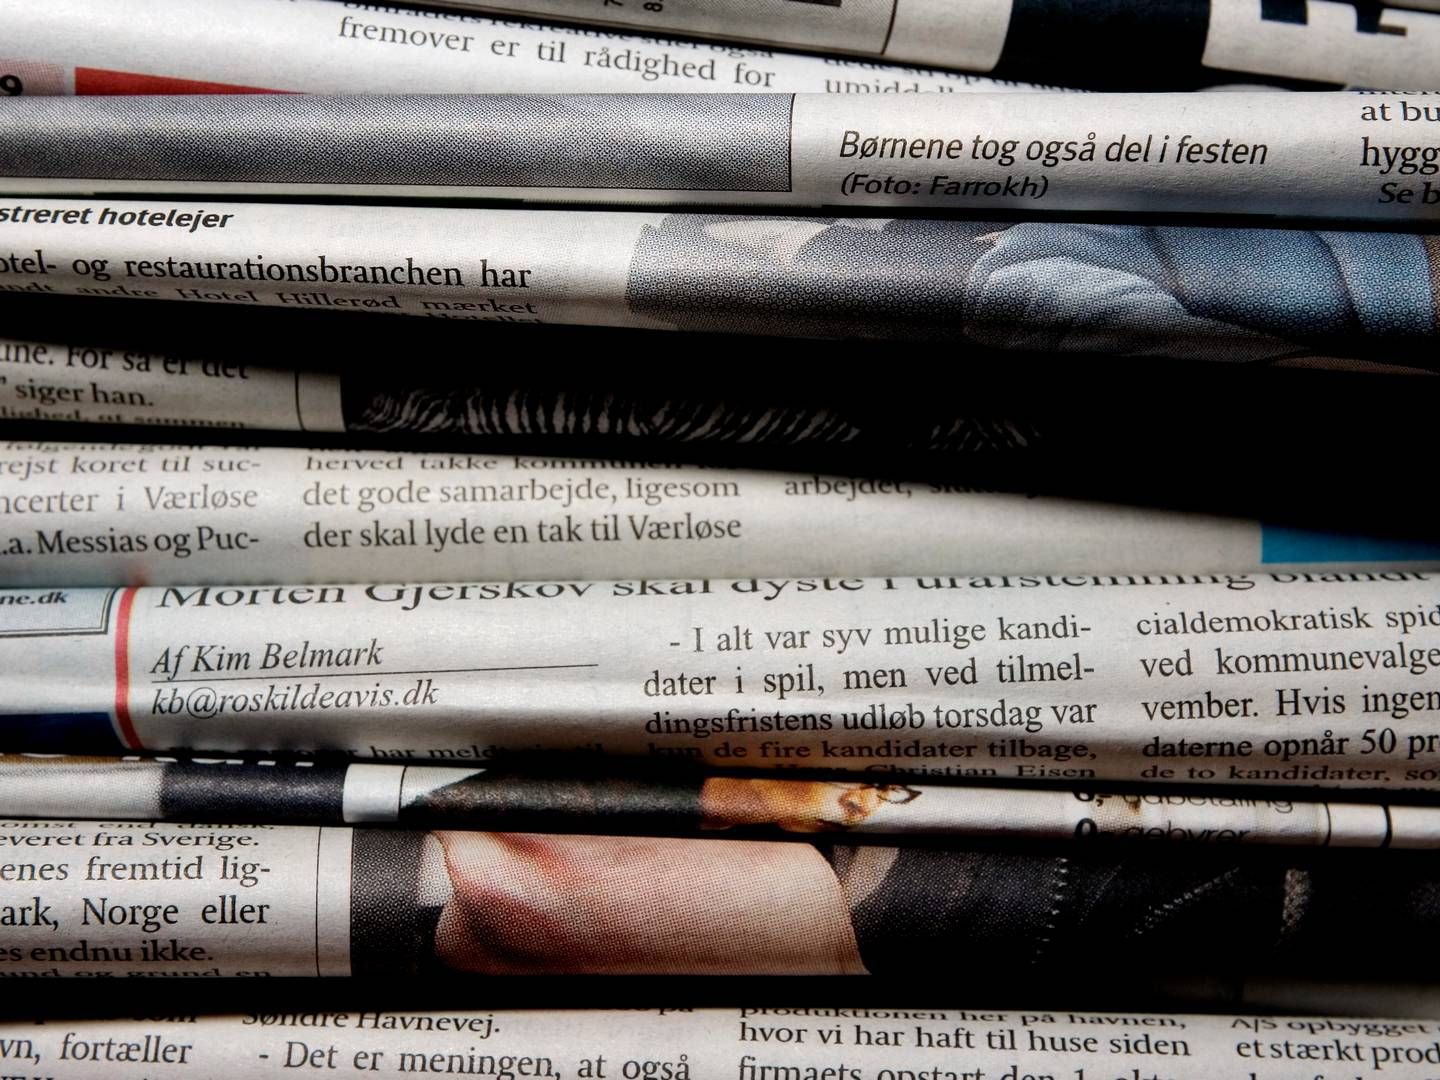 I 2023 landede det samlede annoncesalg til dagblade på print på godt 433 mio. kr. | Foto: Thomas Borberg/Politiken/Ritzau Scanpix